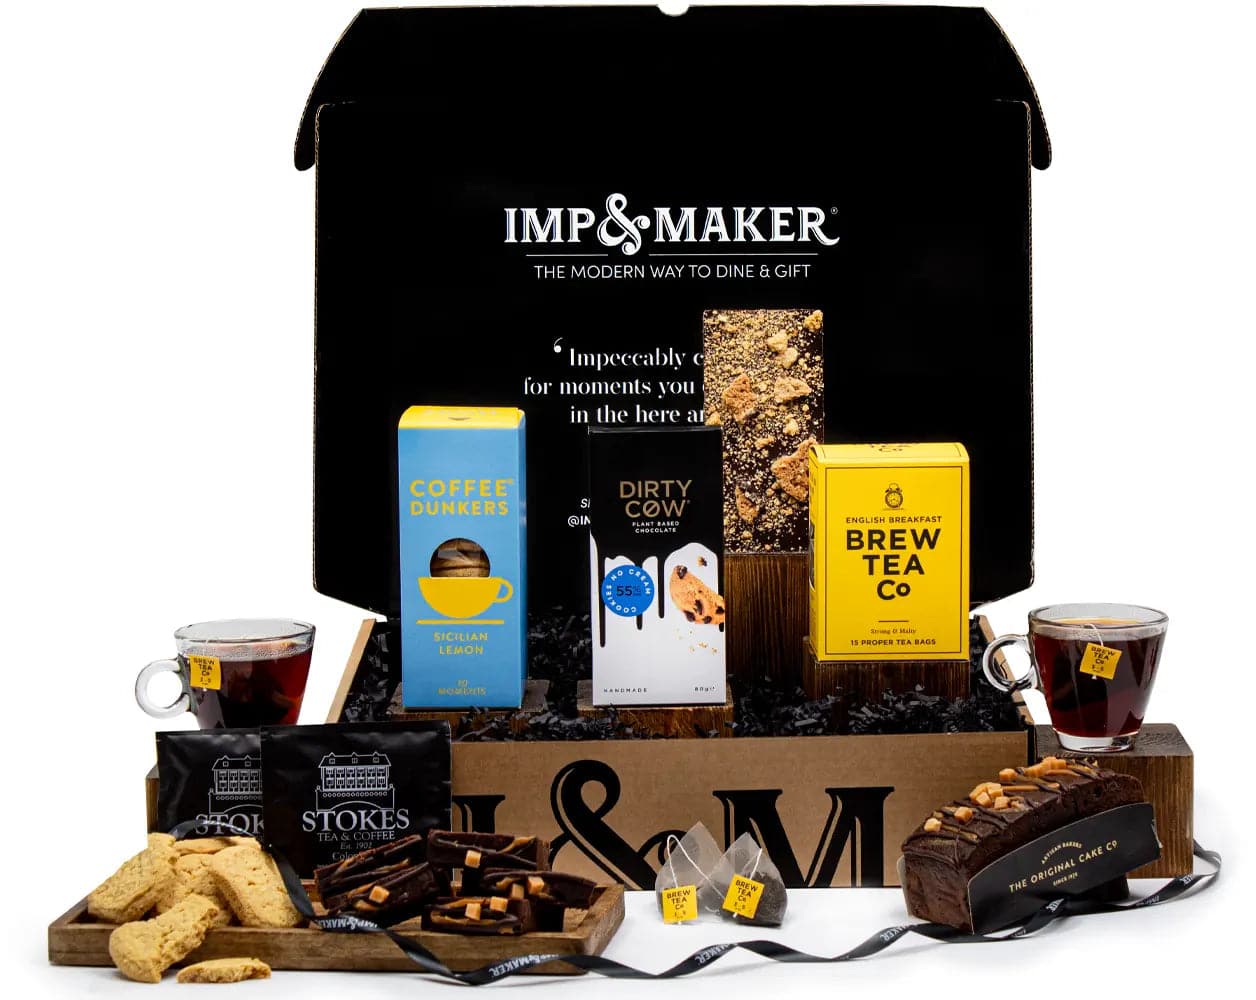 Tea & Cake Gift Set - IMP & MAKER